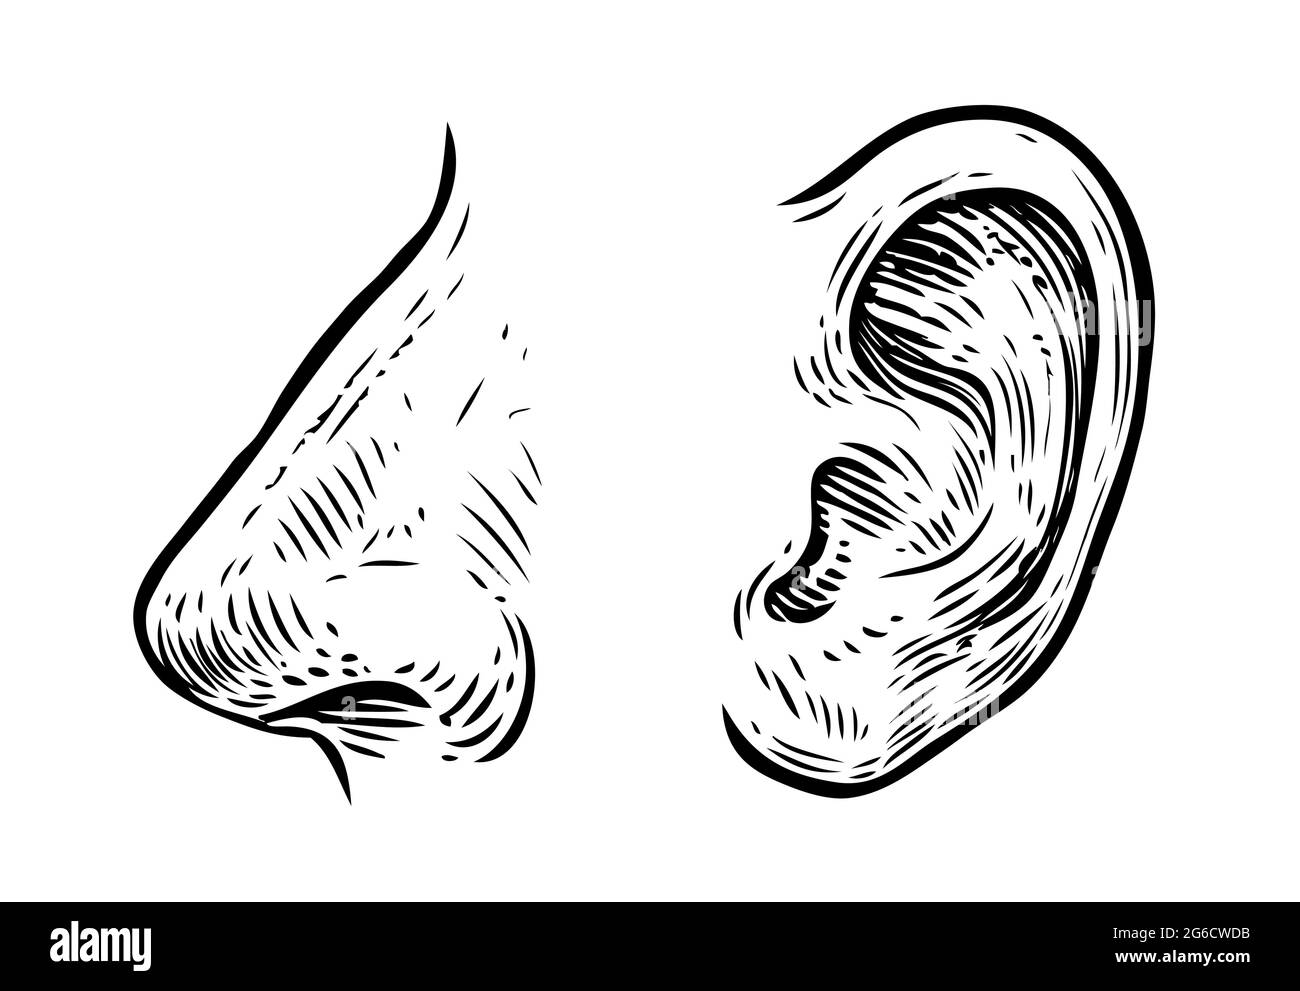 Nariz humana, dibujo de la oreja. Ilustración dibujada a mano en estilo grabado vintage Ilustración del Vector